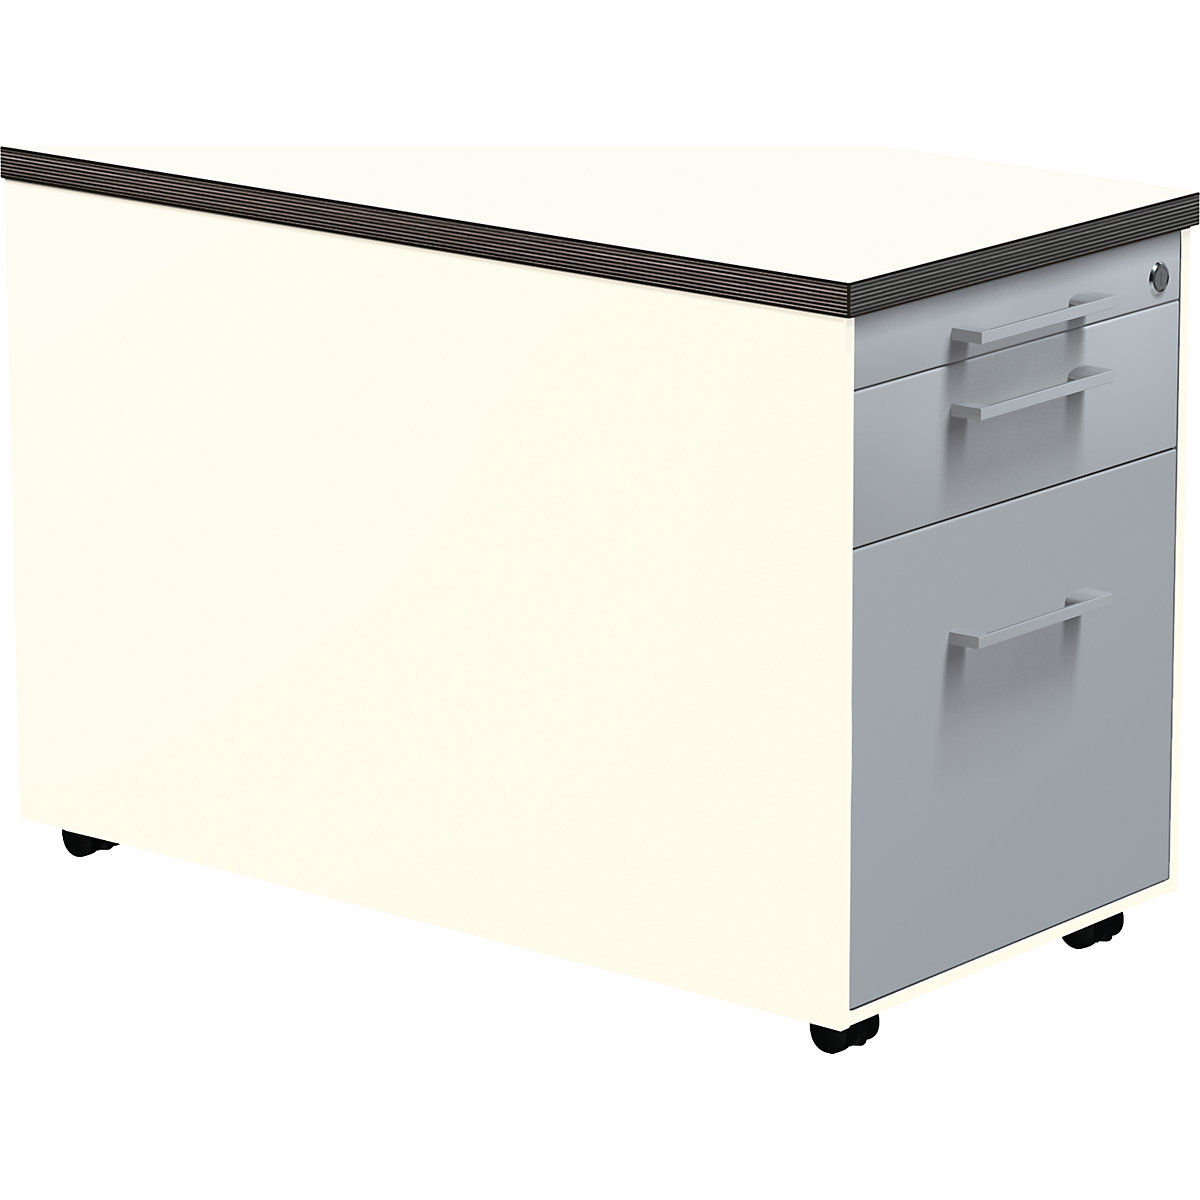 Casetieră cu sertare pe role – mauser, î. x ad. 529 x 800 mm, 1 sertar pentru materiale, 1 registratură suspendată, alb pur / argintiu aluminiu / alb